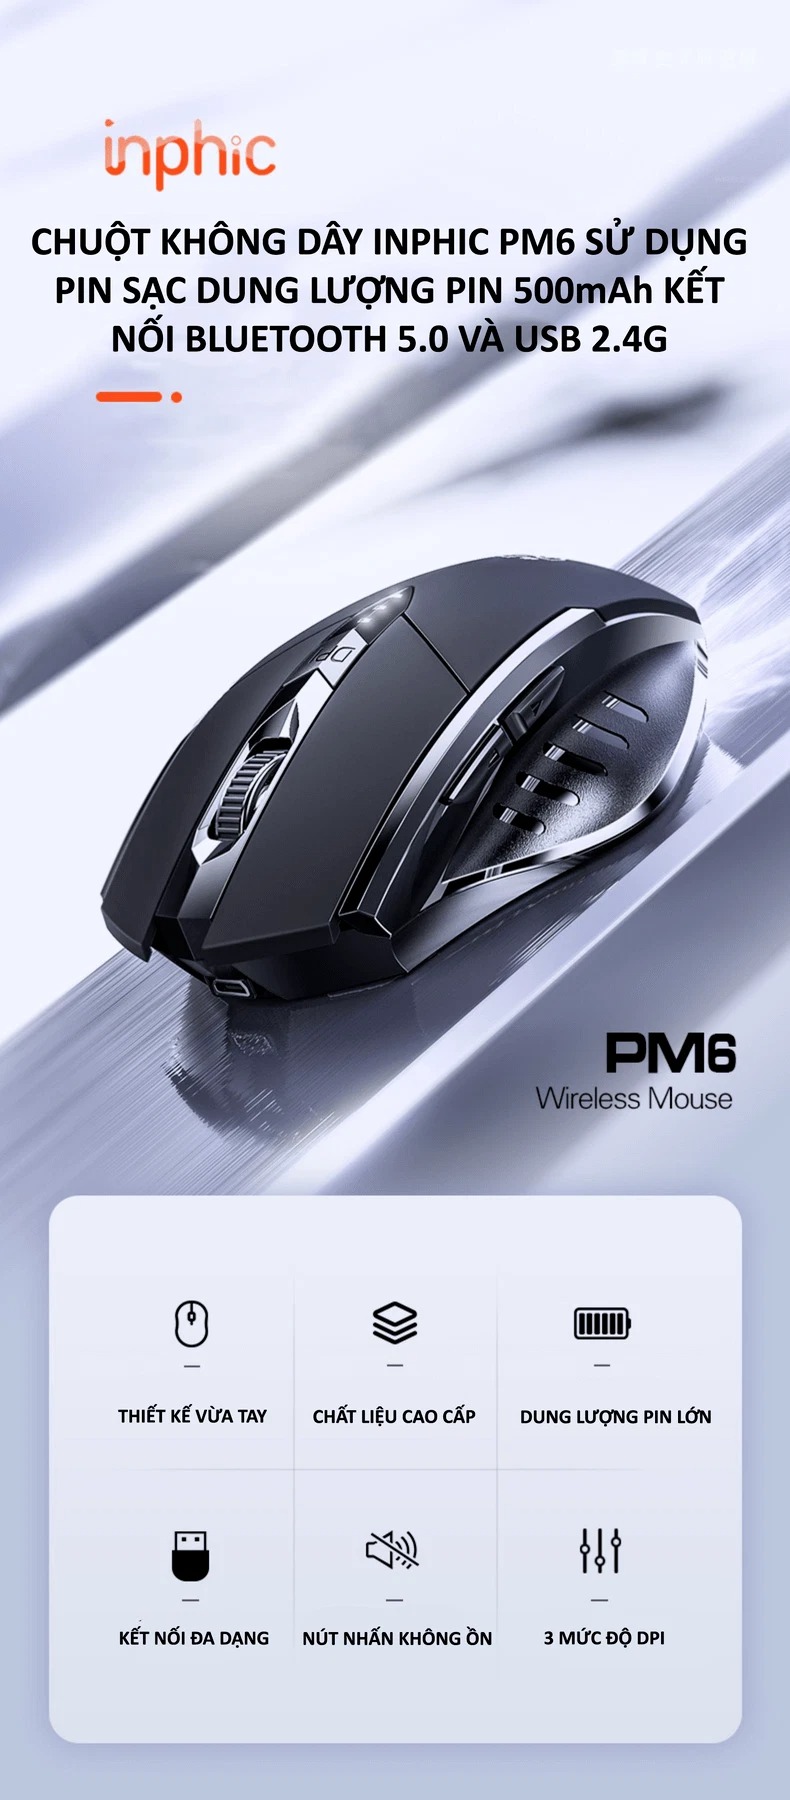 Chuột không dây INPHIC PM6 sử dụng pin sạc kết nối bằng USB 2.4G, Bluetooth 5.0 với nút nhấn silent không tiếng ồn - HÀNG CHÍNH HÃNG